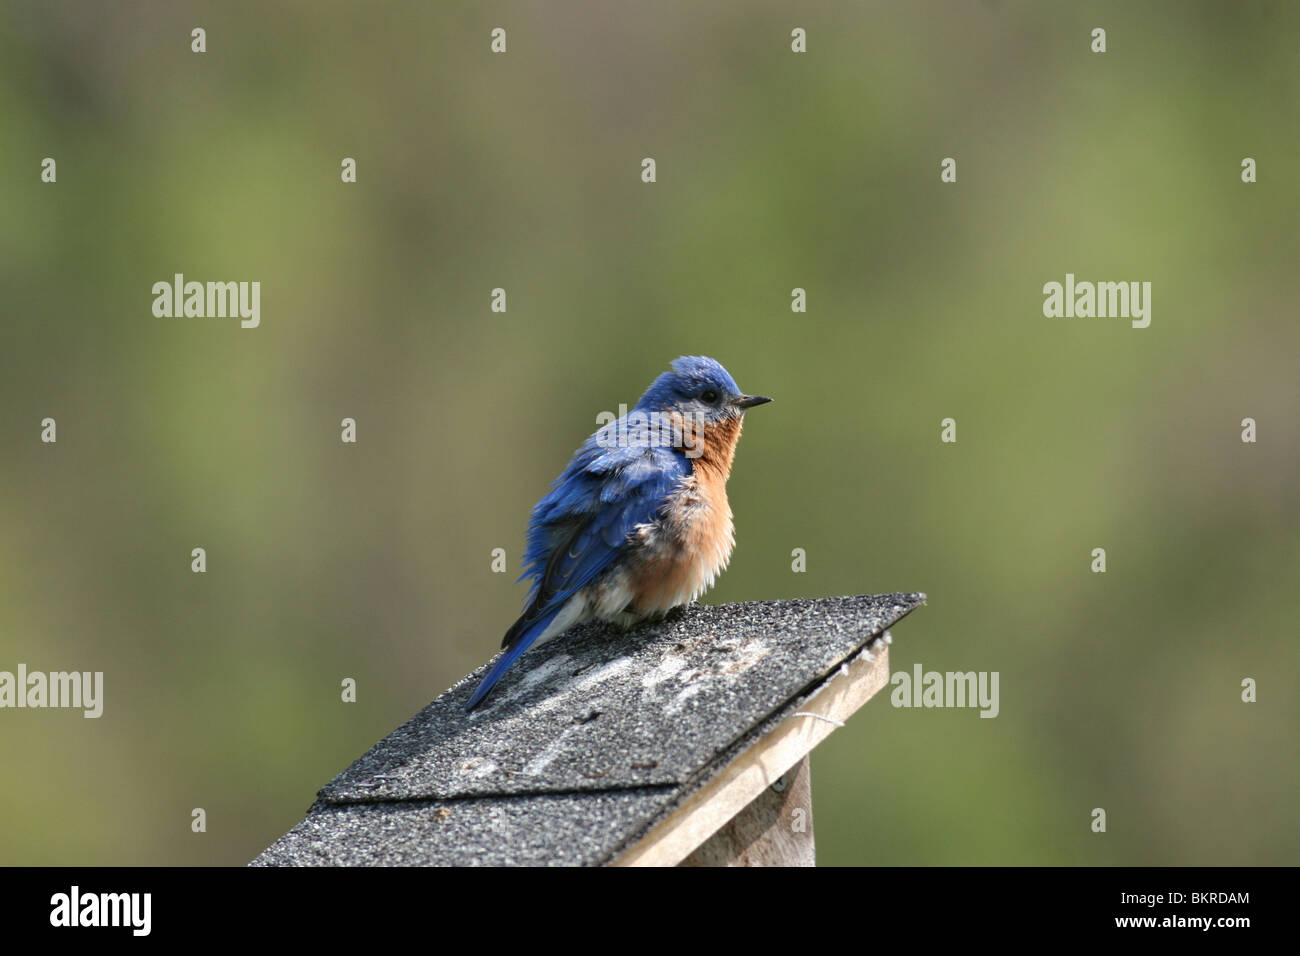 Eastern bluebird sitting on bird house Stock Photo